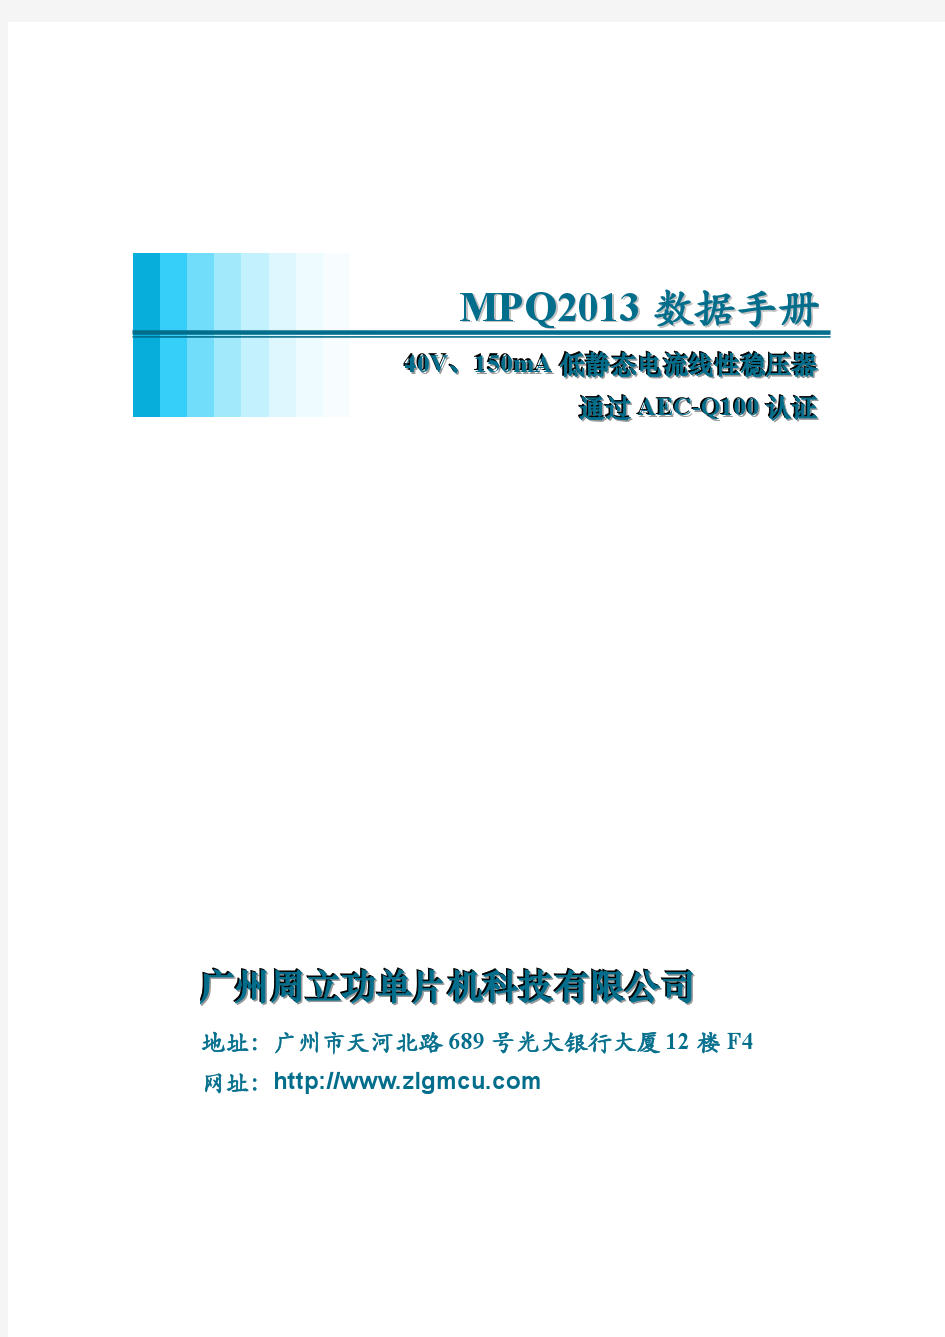 周立功单片机 MPQ2013数据手册(中文)-V1.00